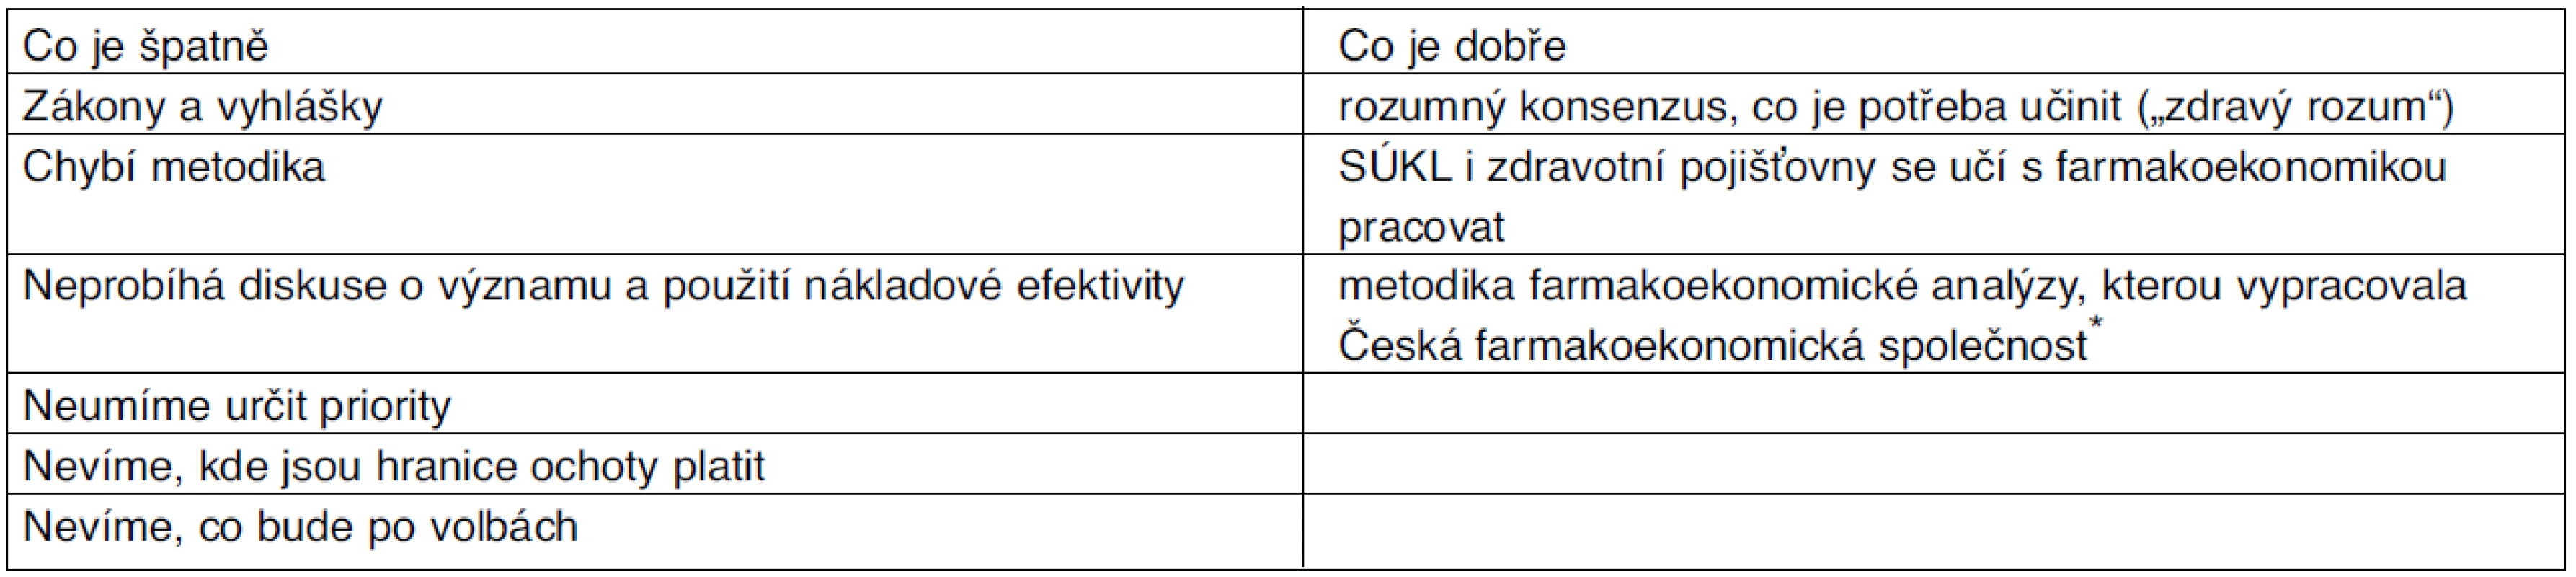 Hodnocení reformy tvorby cen a úhrad léčiv v ČR po 17 měsících od zavedení z hlediska využití farmakoekonomiky